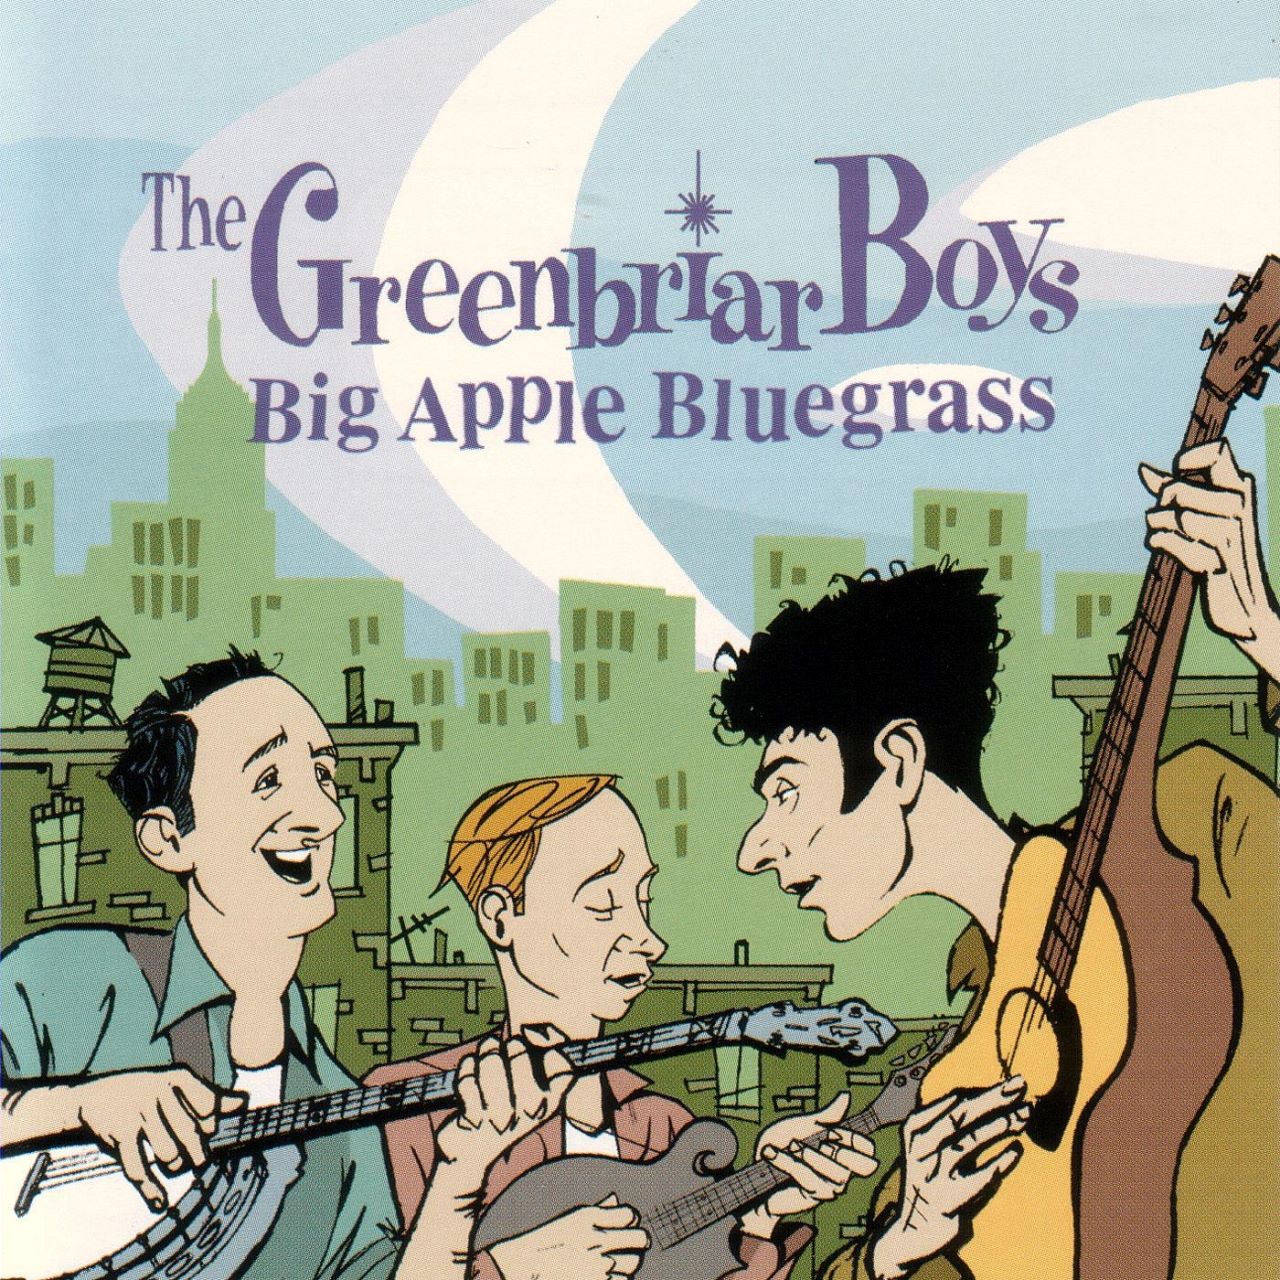 Greenbriar Boys - Big Apple Bluegrass cover album